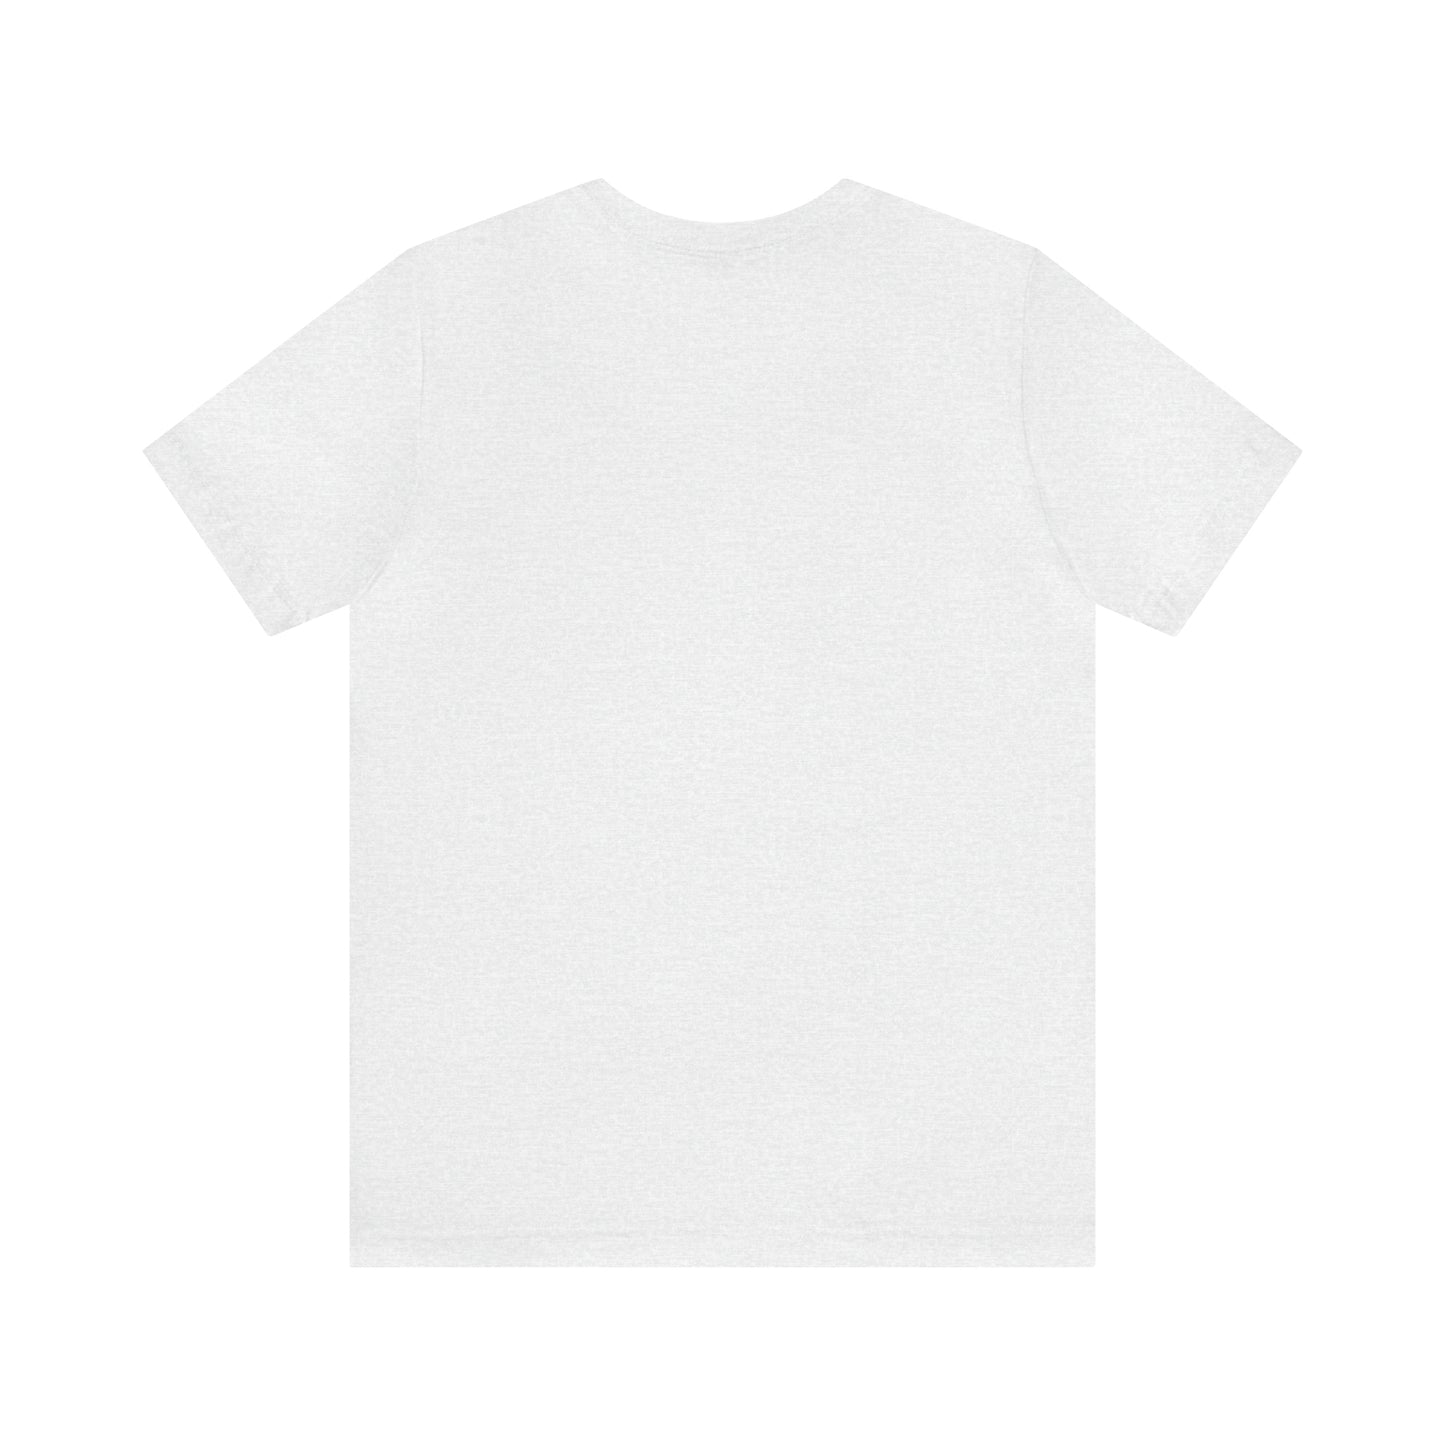 Adams, Mass Pickleball Short Sleeve T-Shirt